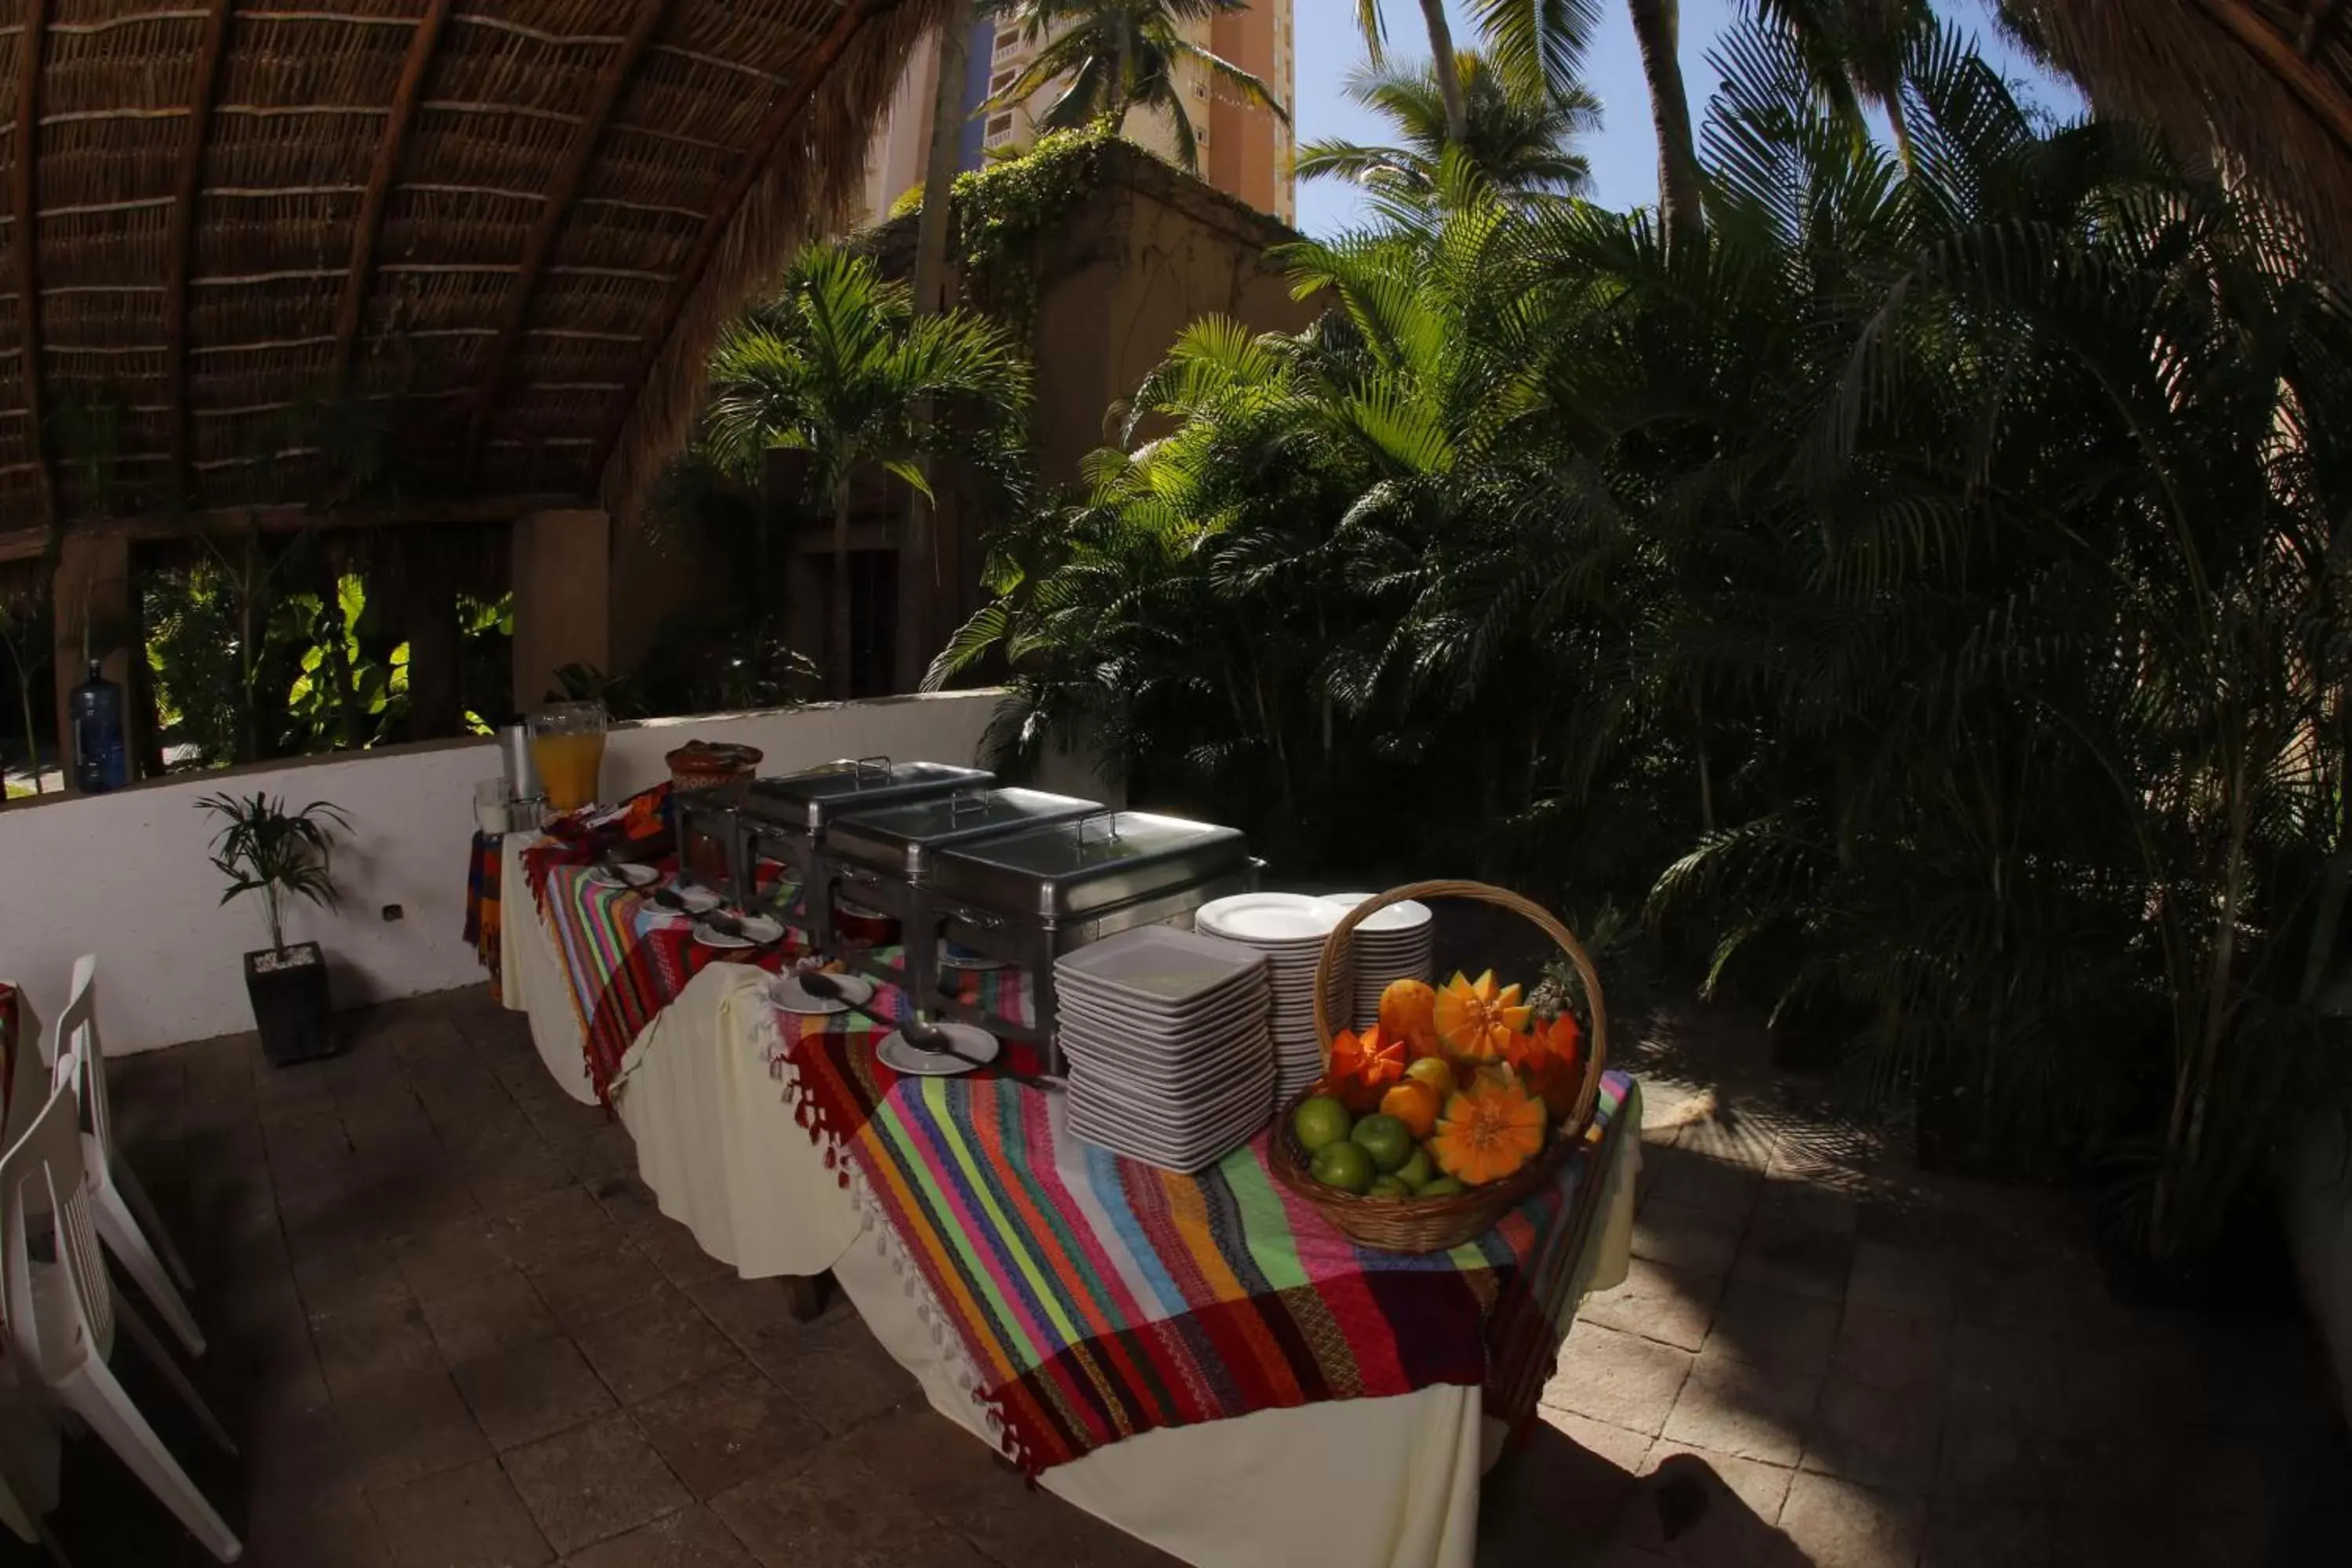 Buffet breakfast in Villas El Rancho Green Resort